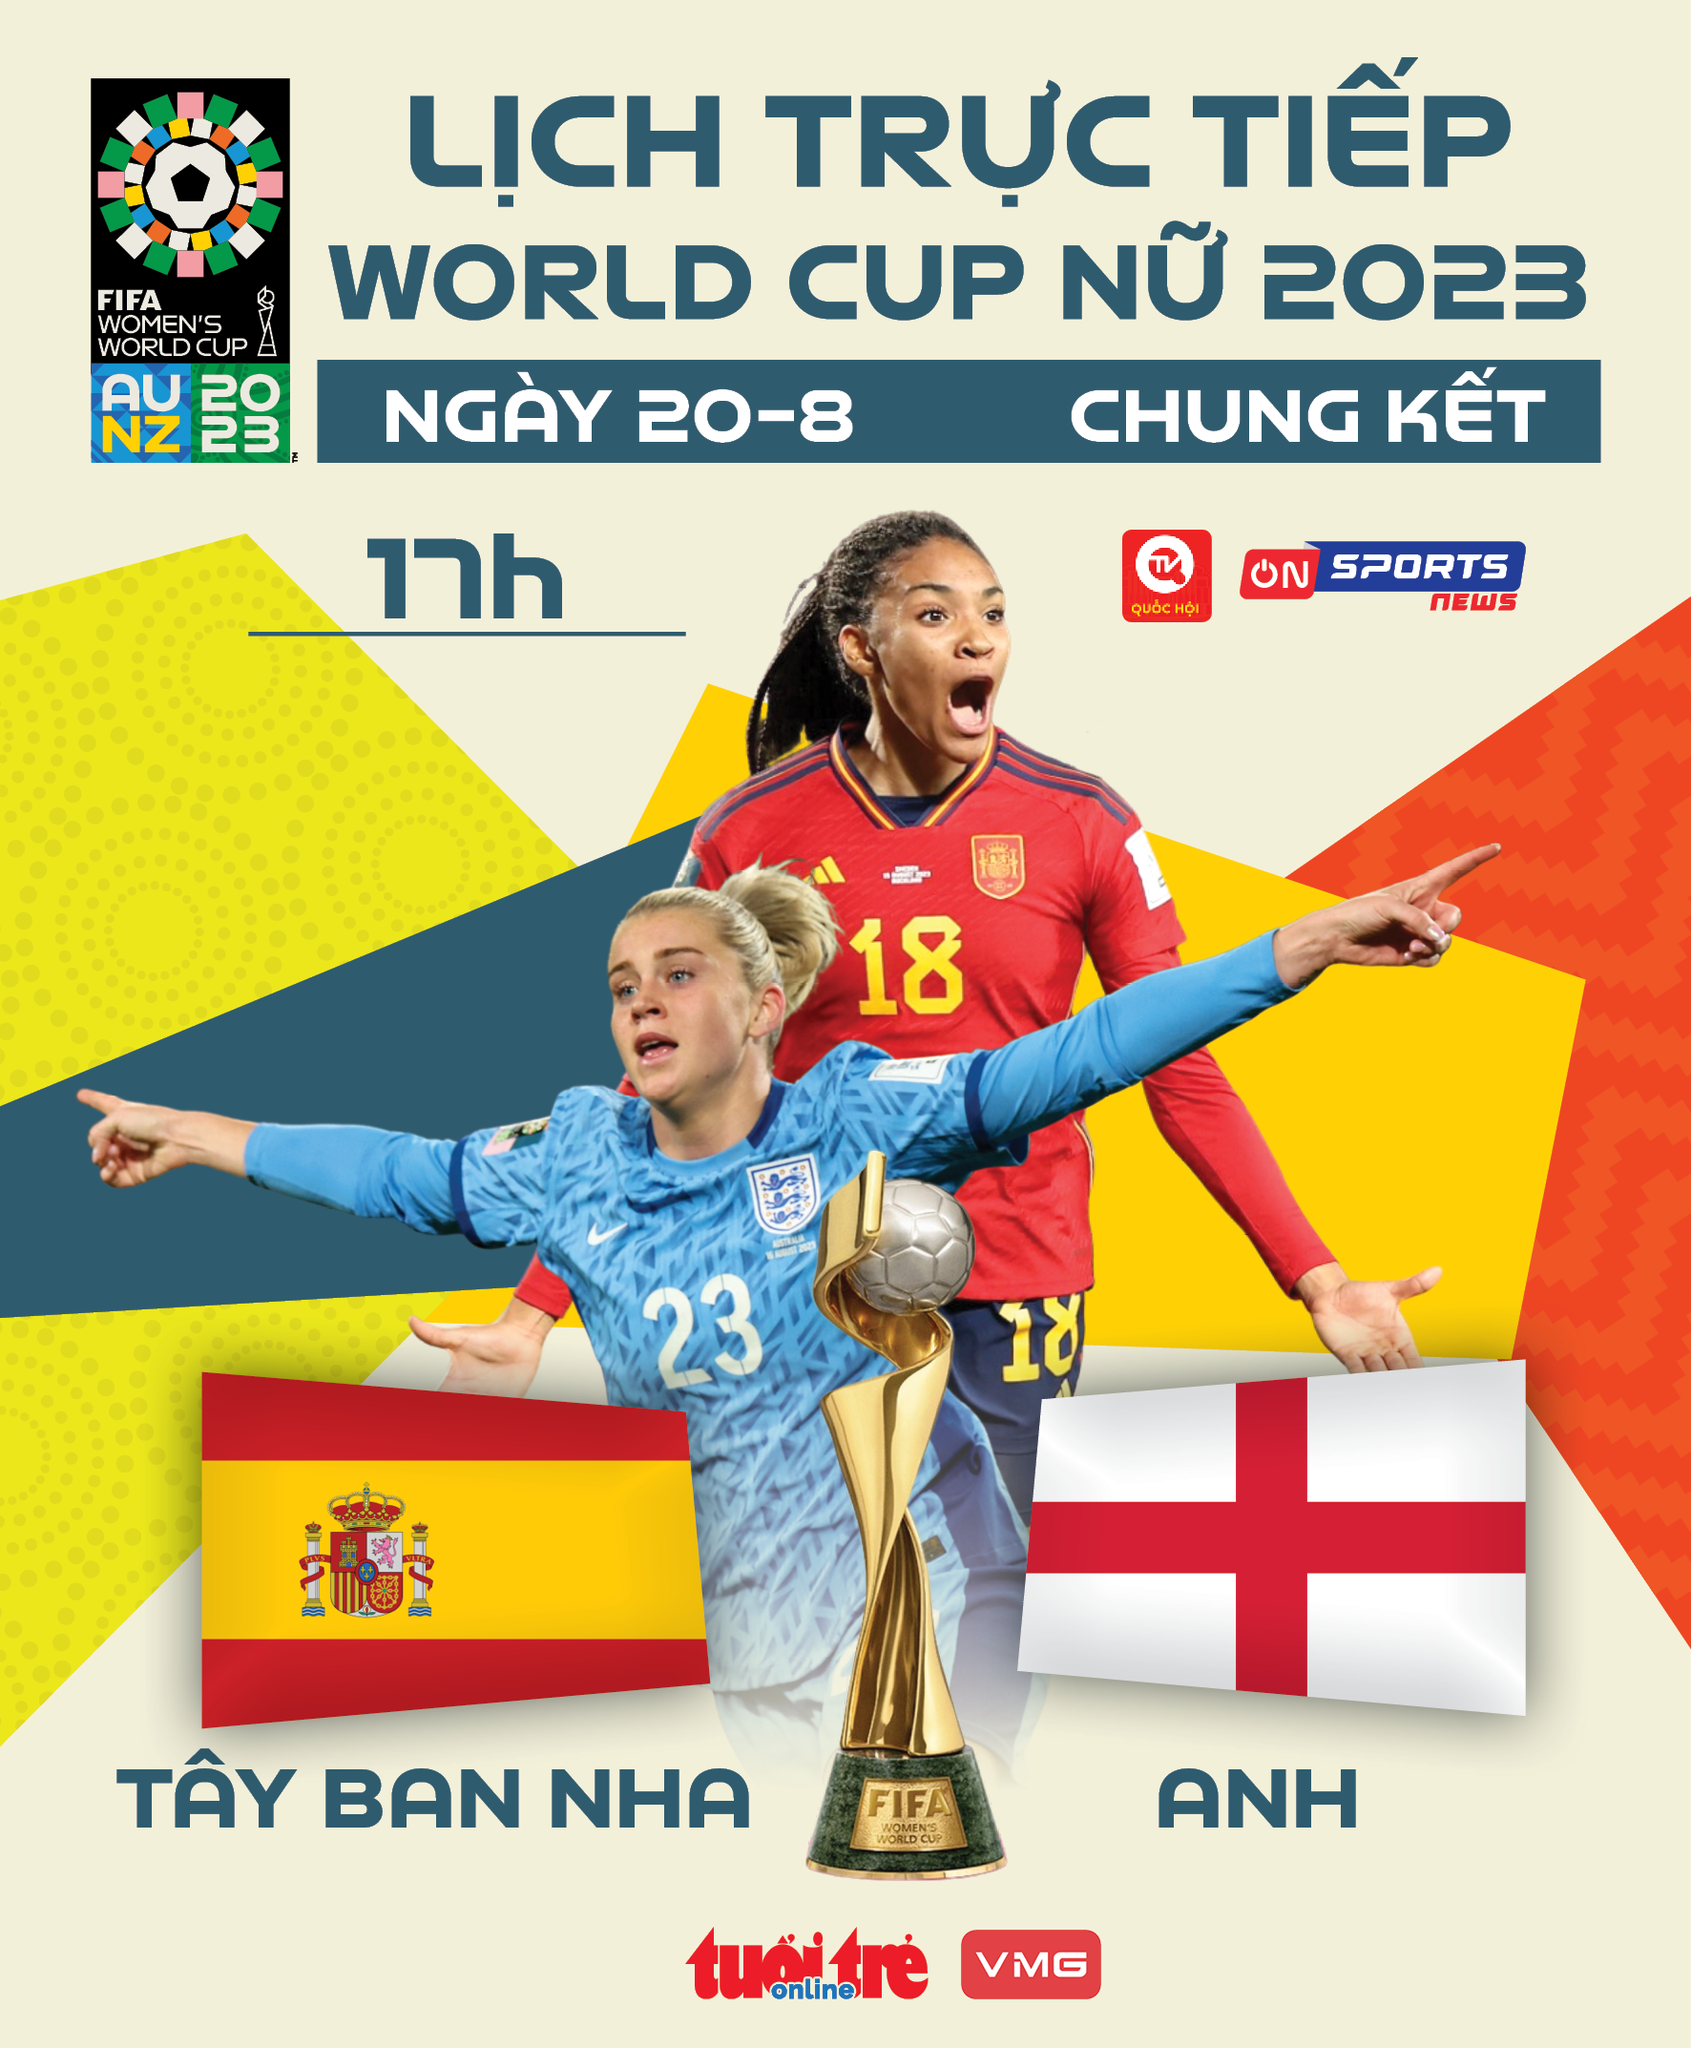 Lịch trực tiếp chung kết World Cup nữ 2023: Tây Ban Nha gặp Anh - Ảnh 1.